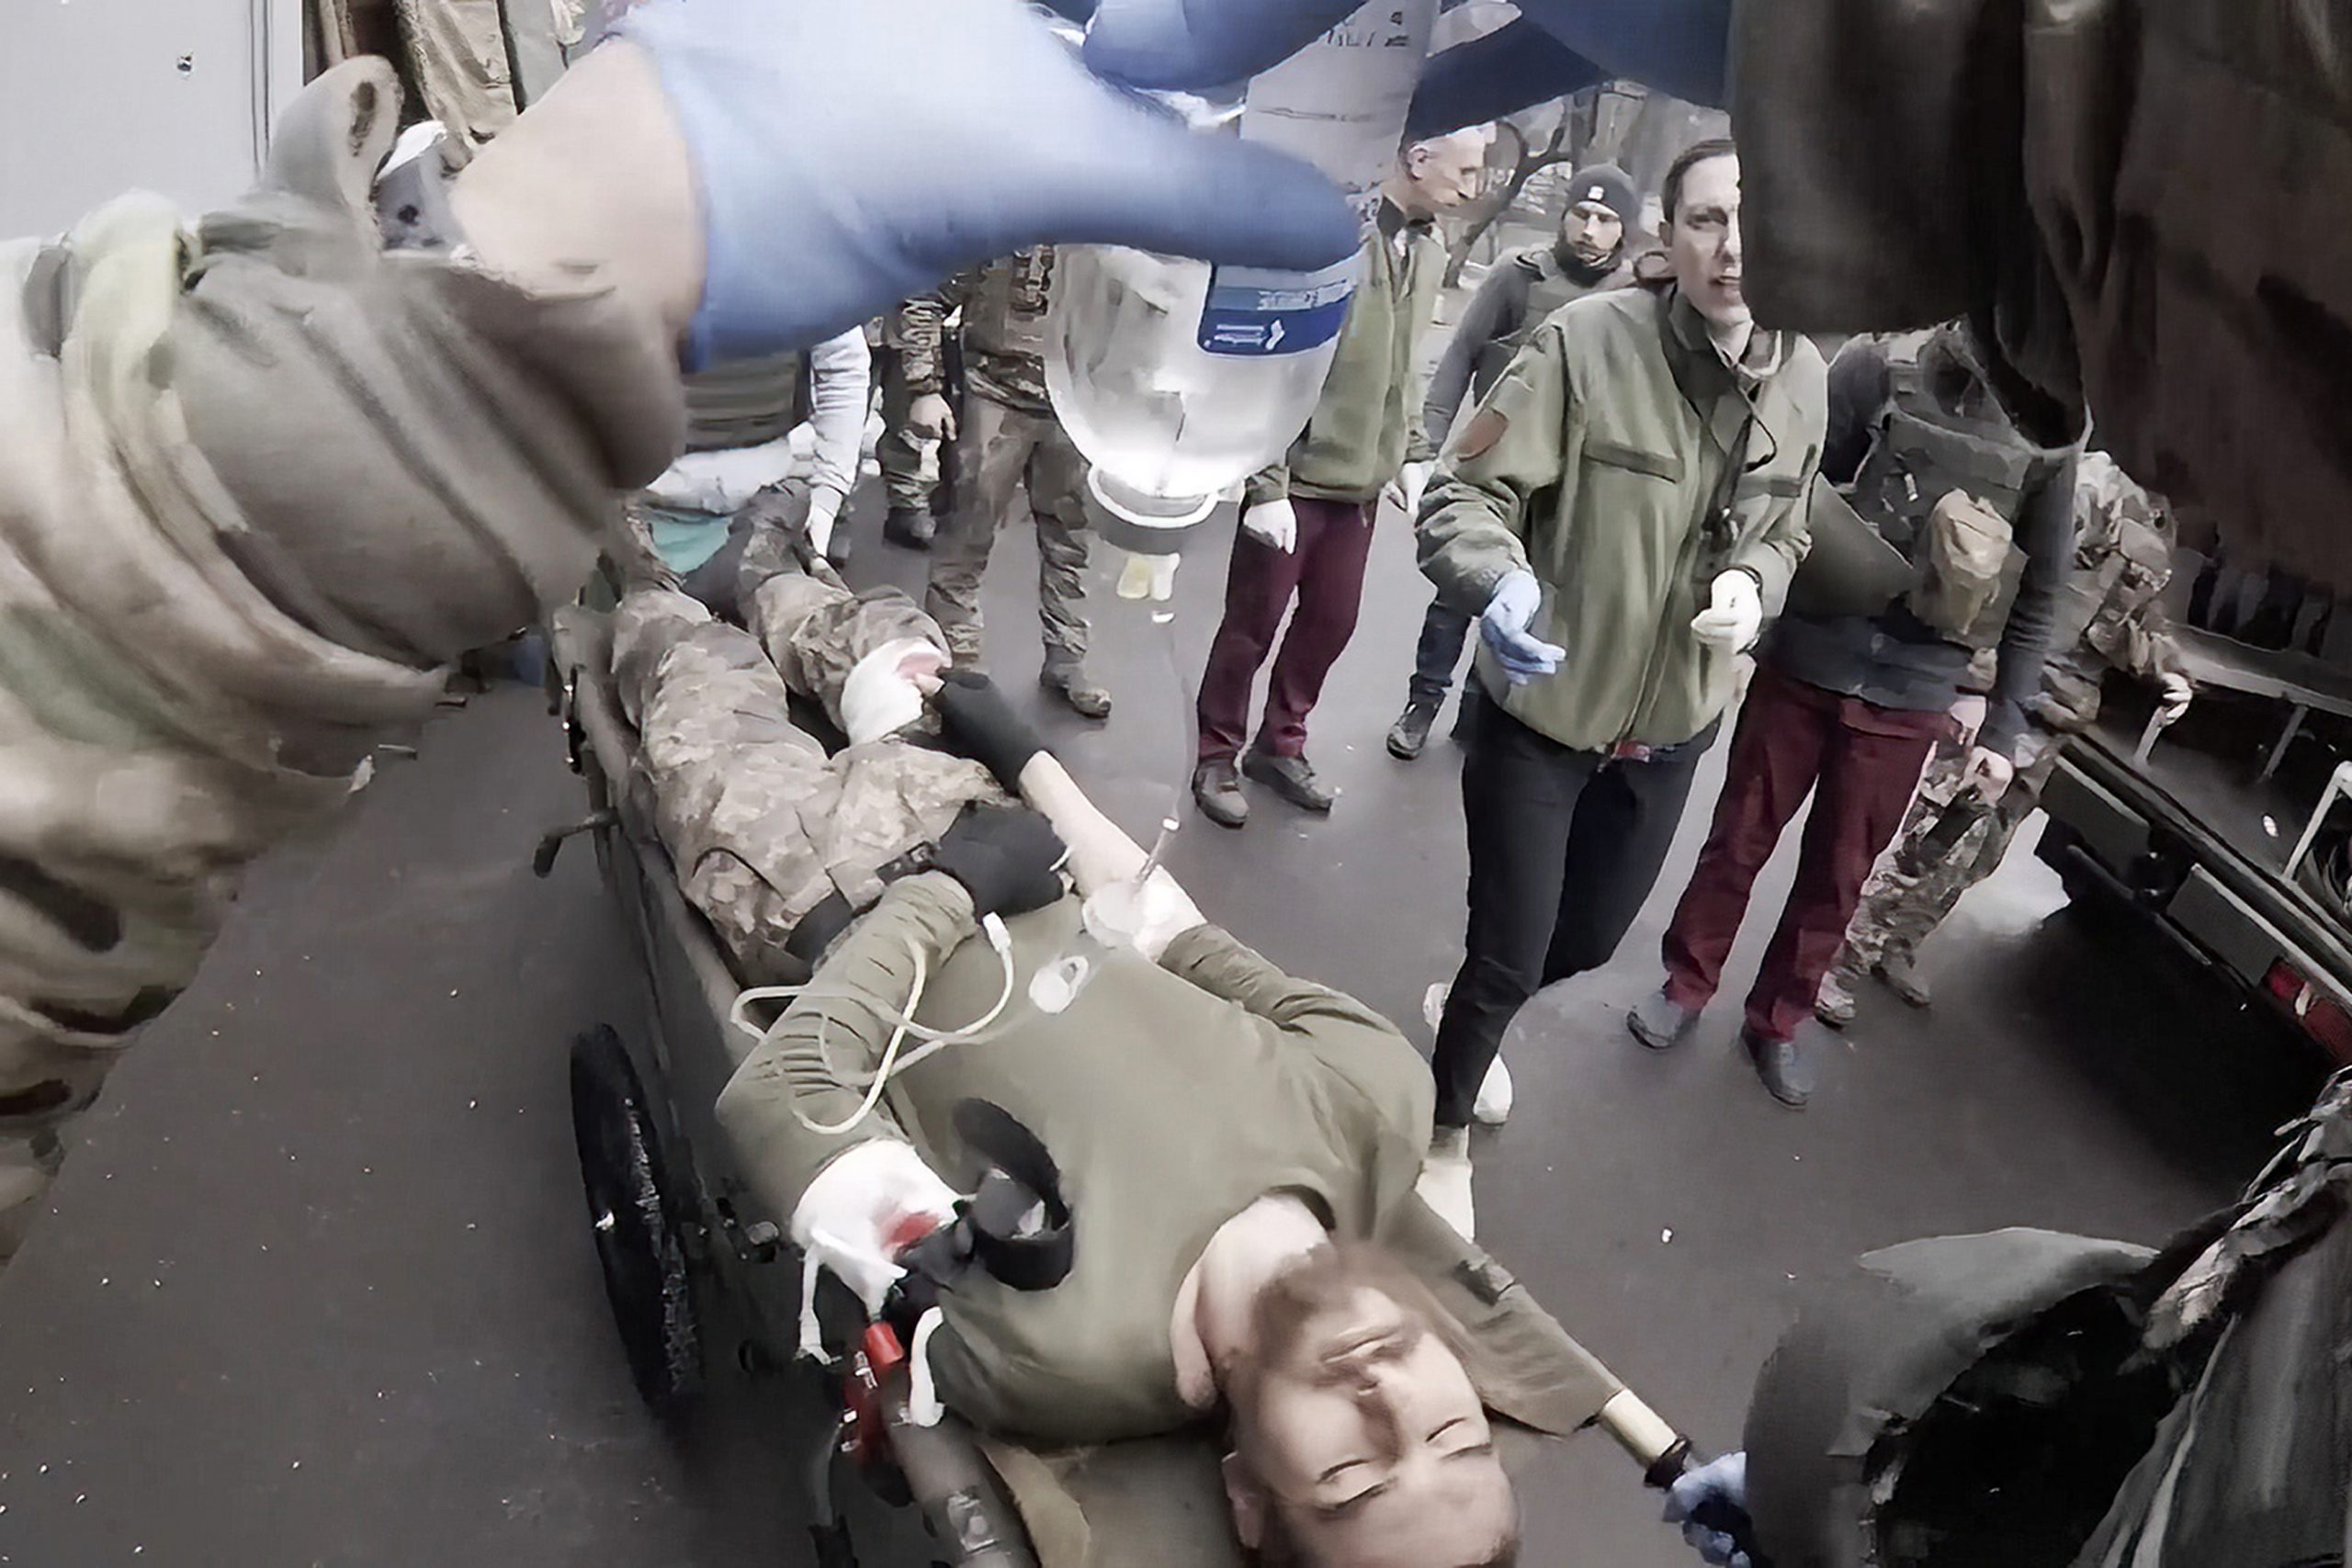 乌克兰军医拍下马里乌波尔惨况后遭俄军俘虏 抢救患者不分敌我画面曝光